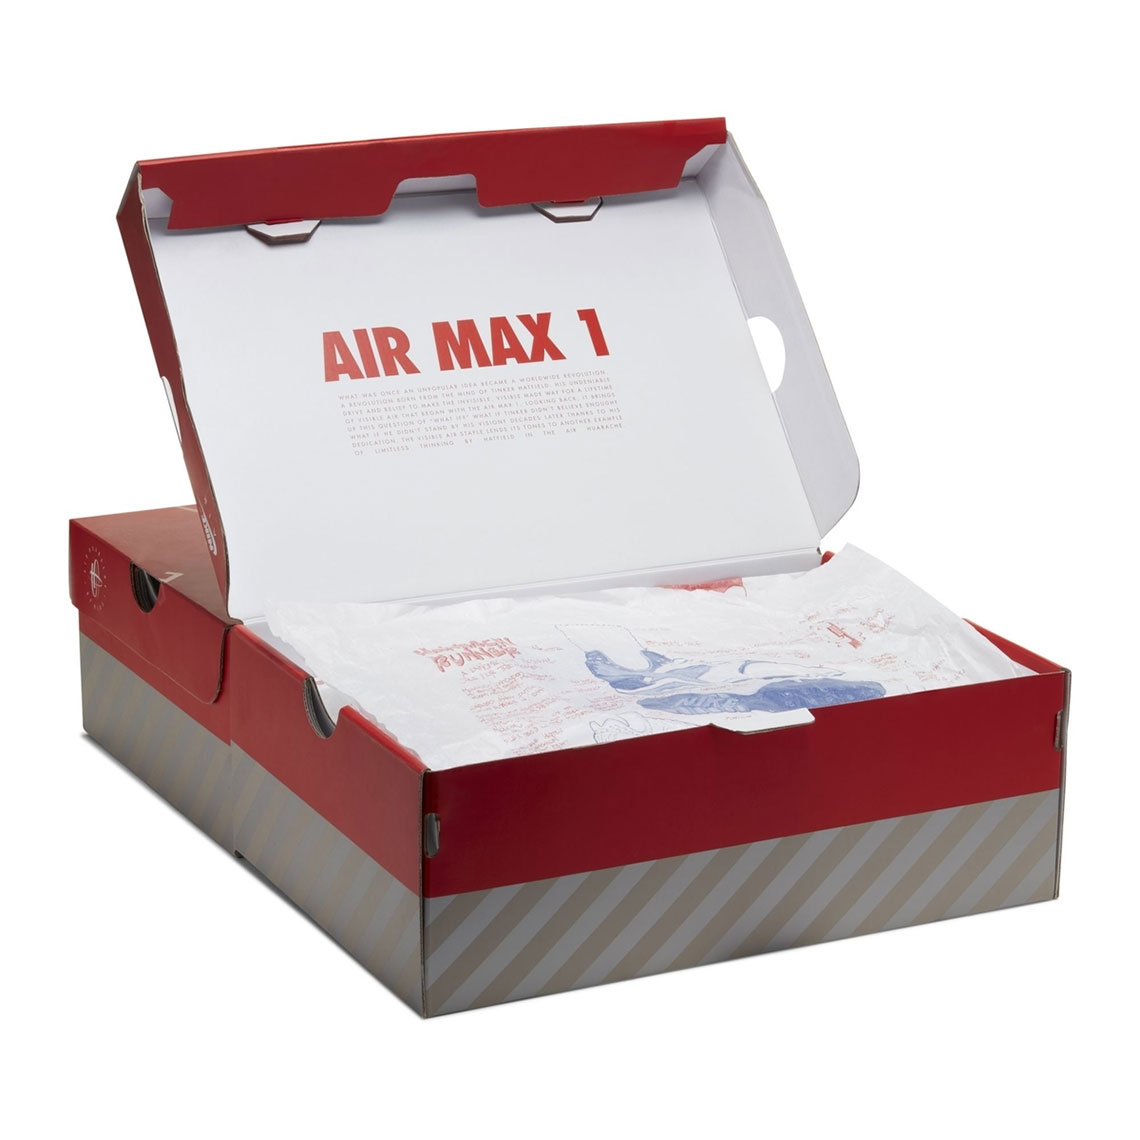 air max 1 huarache pack